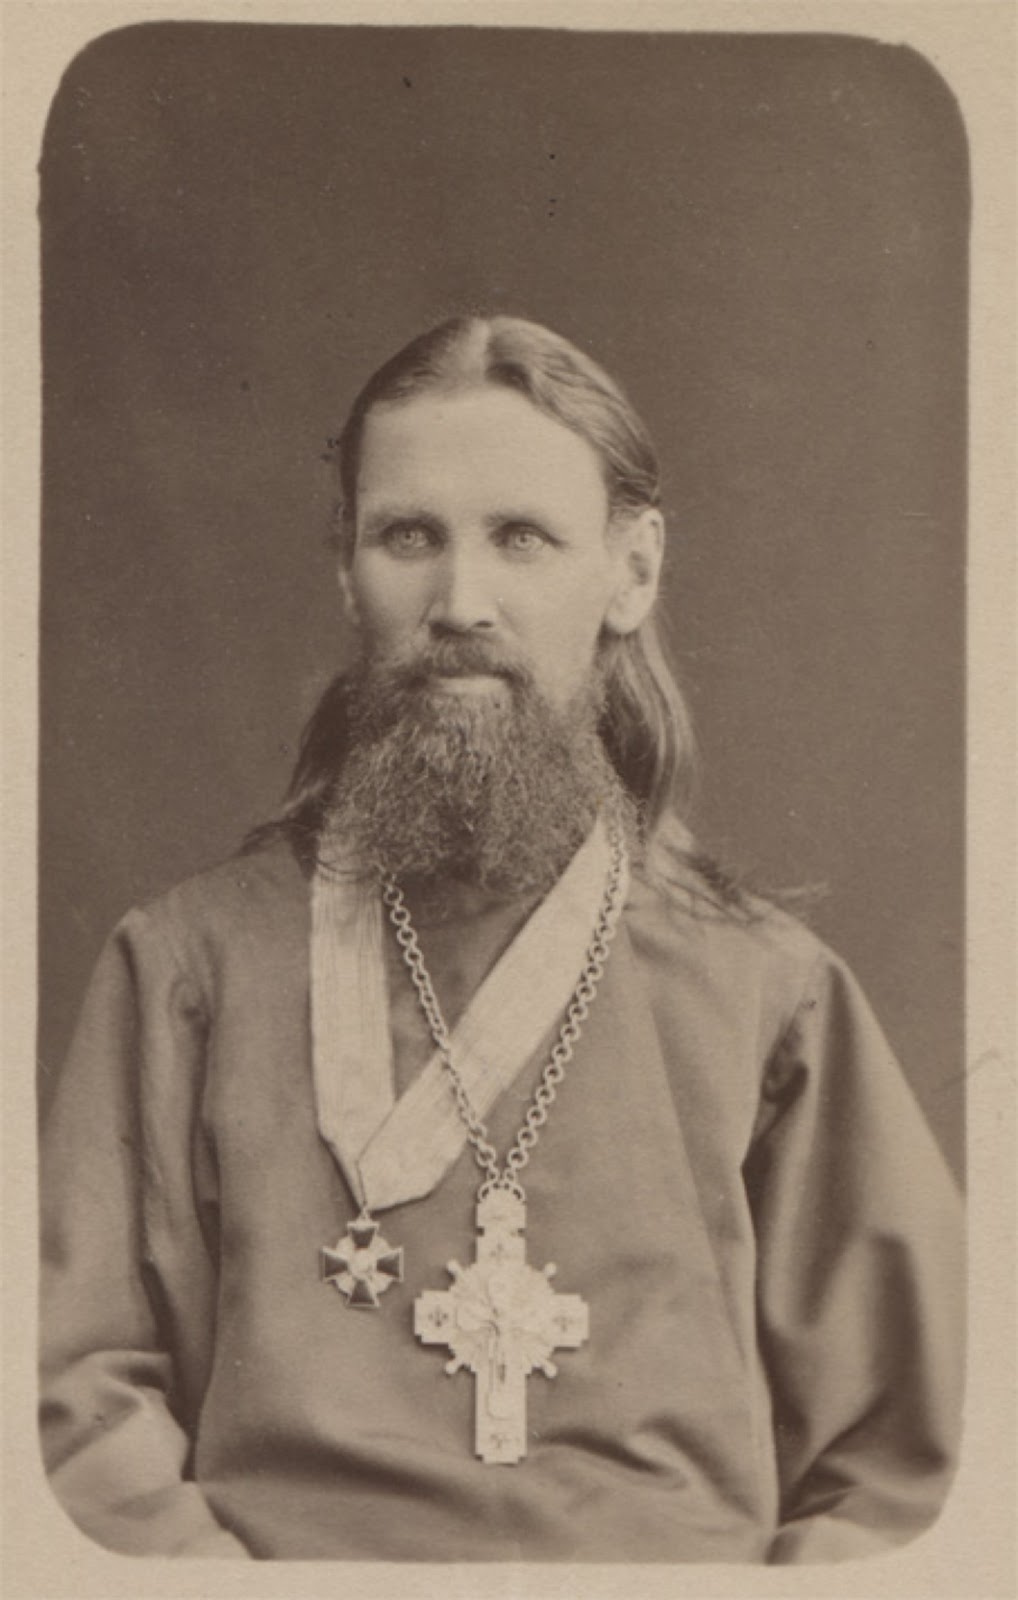 john-of-kronstadt-20-sept-1884-bw.jpg